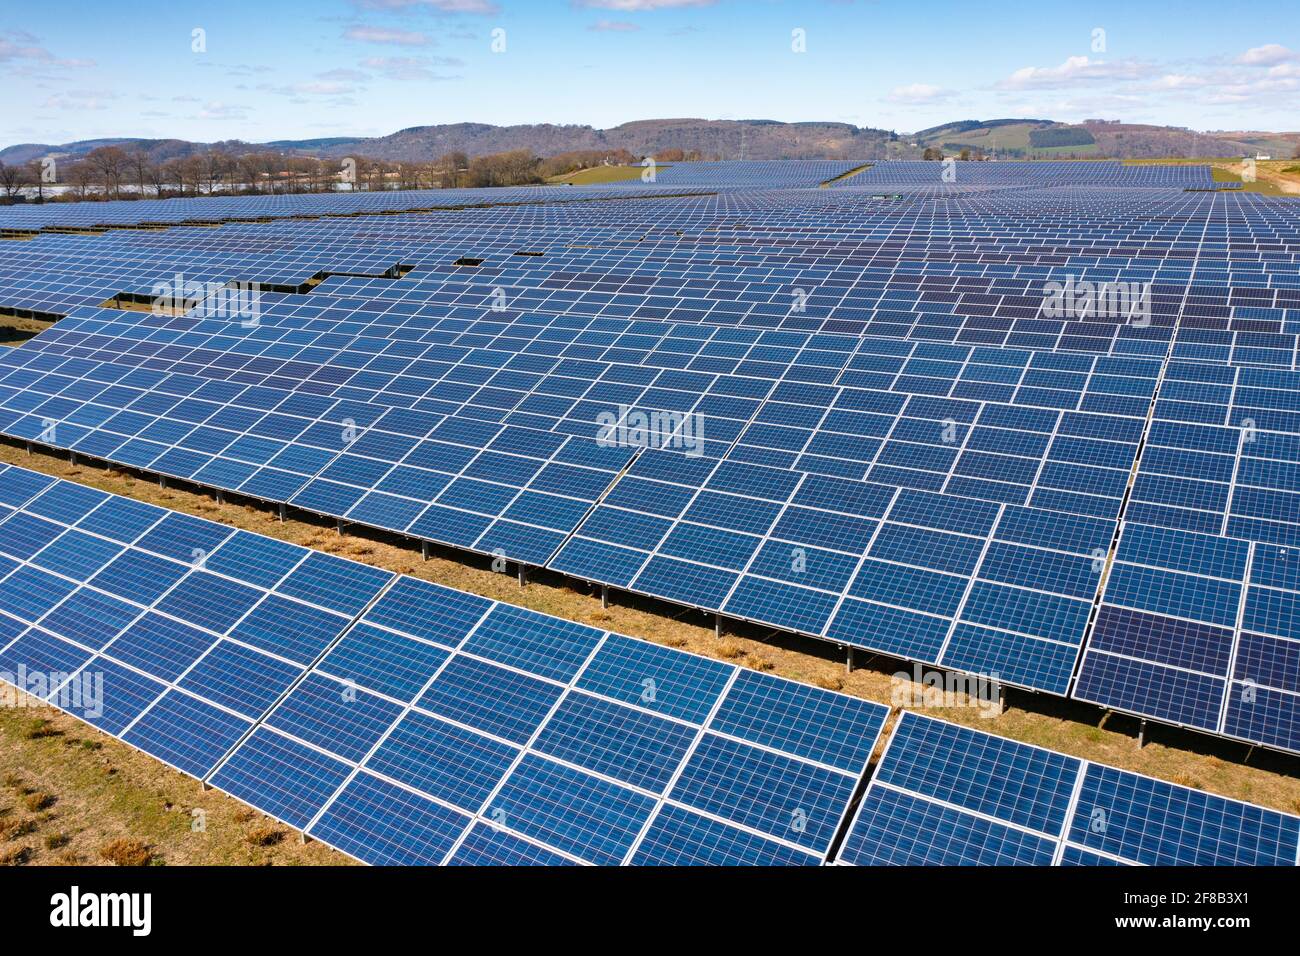 Vue aérienne depuis un drone de panneaux solaires dans une ferme d'énergie solaire en Écosse, au Royaume-Uni Banque D'Images